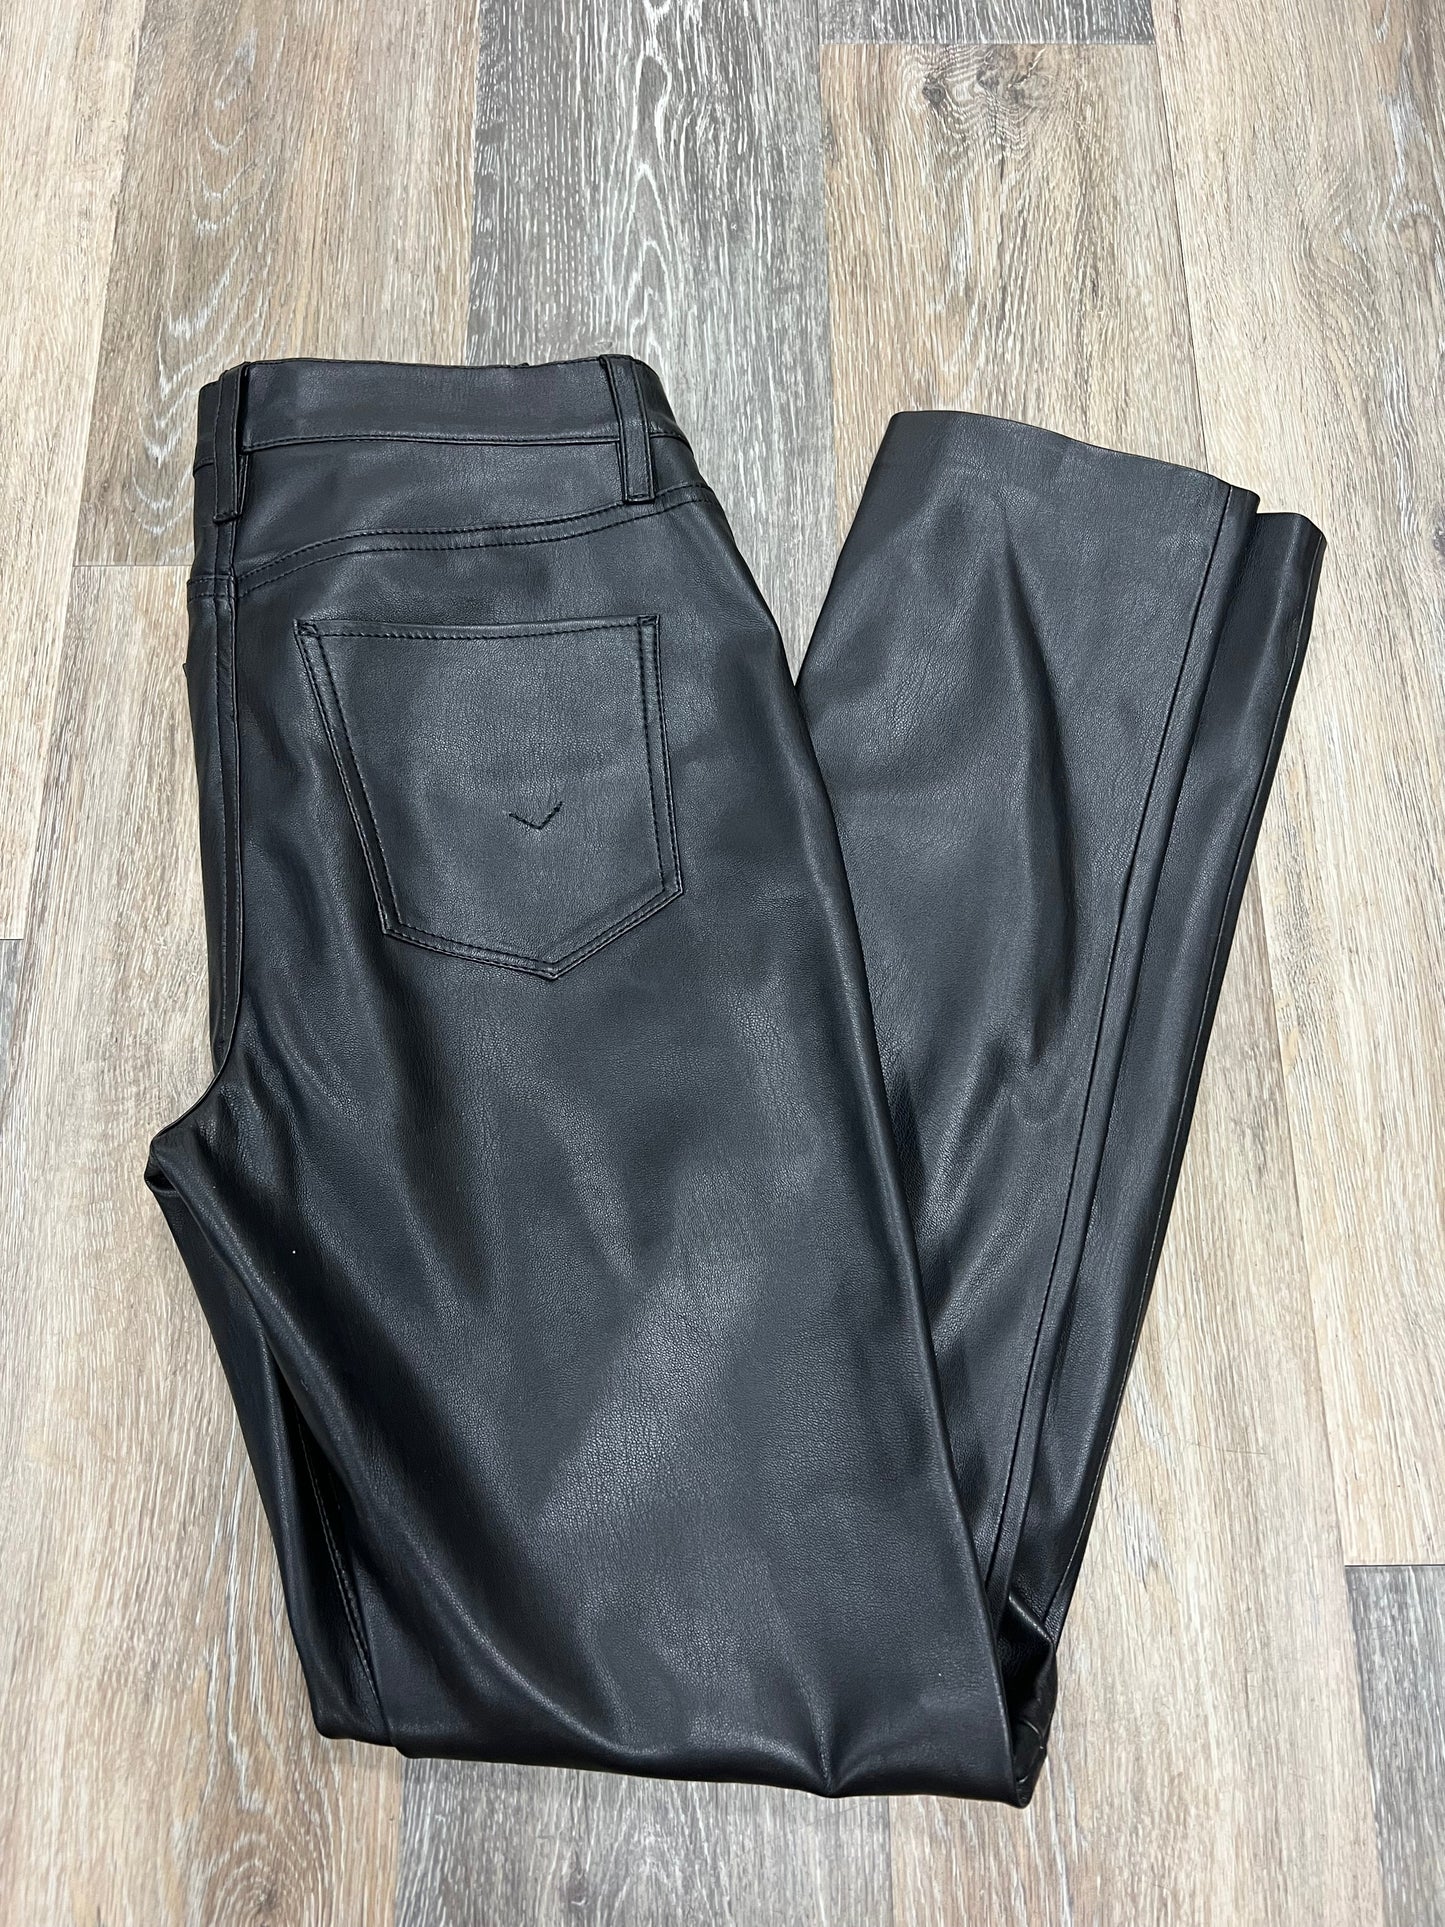 Pants Designer By Hudson  Size: 1/25